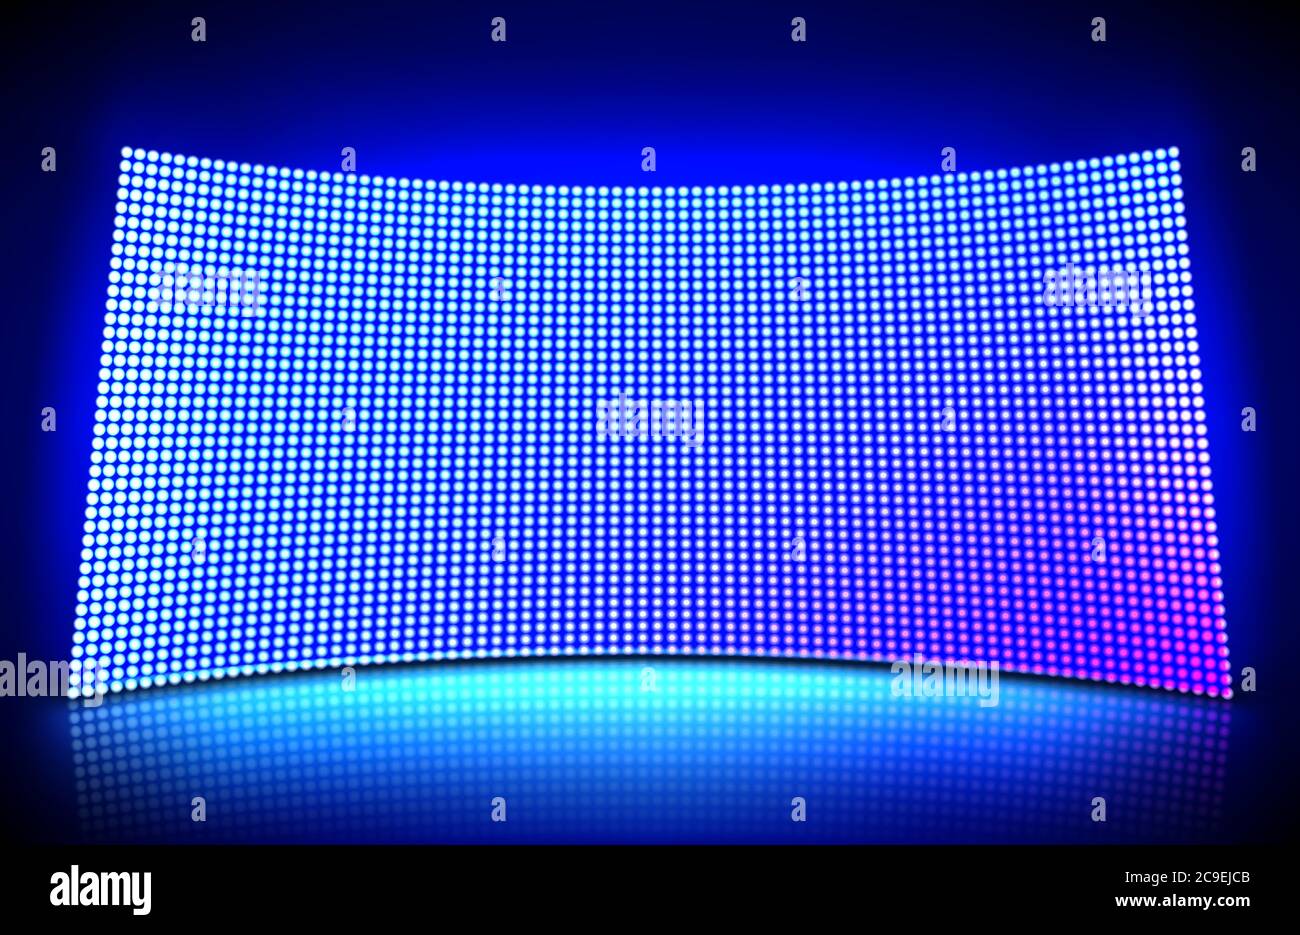 Écran vidéo mural à LED concave avec lumières à points bleues et violettes. Illustration vectorielle du motif de grille pour affichage LED sur le stade ou la scène. Panneau numérique incurvé avec grille de lampes à diodes Illustration de Vecteur